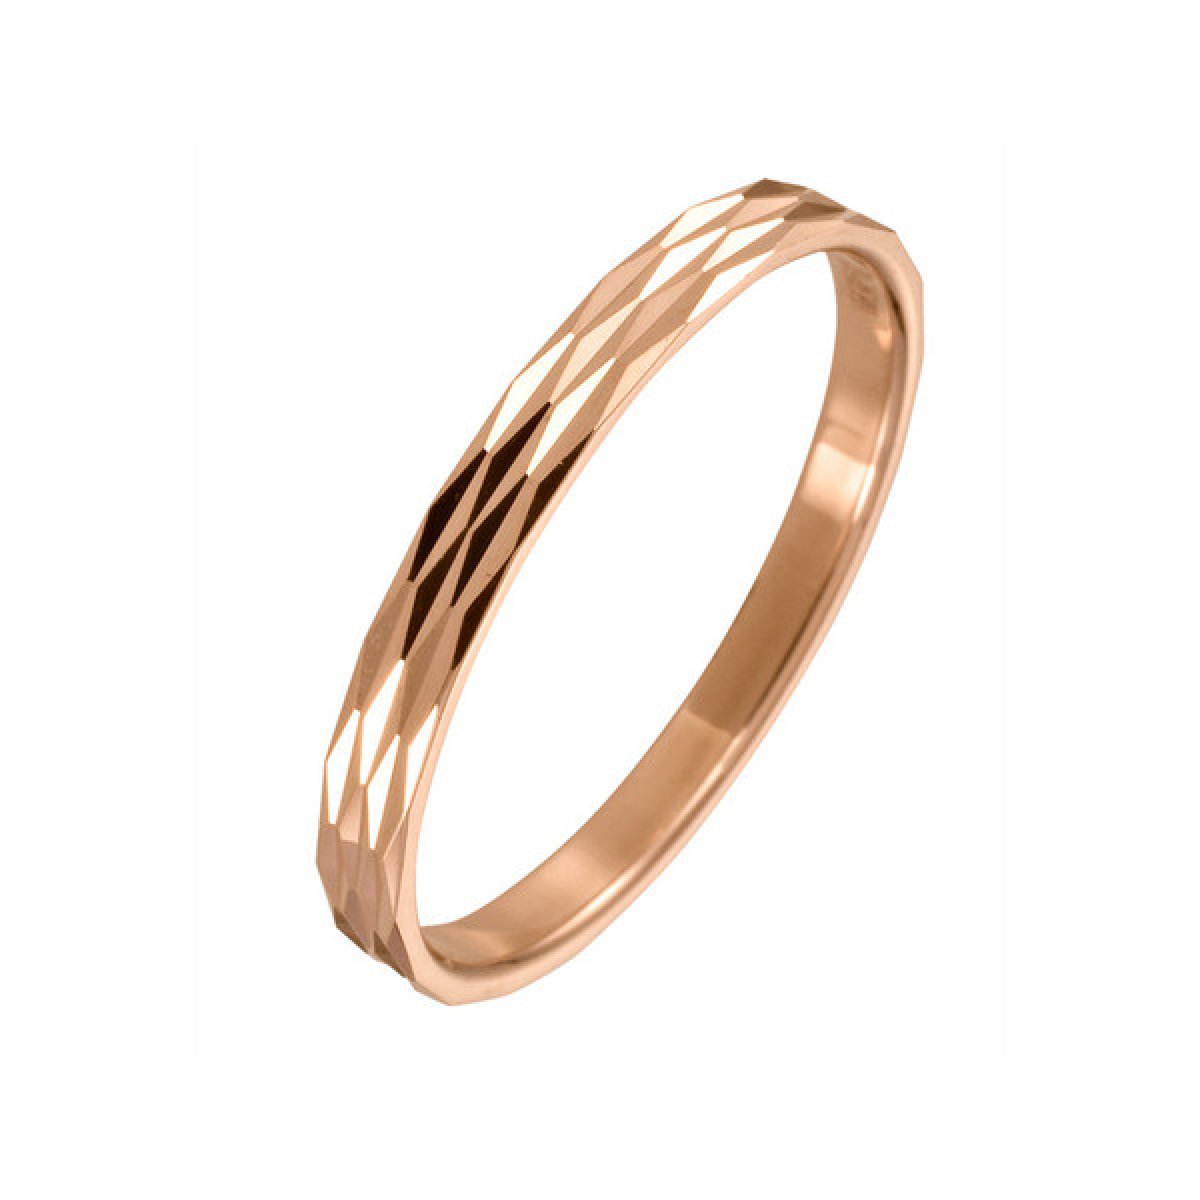 Золотое кольцо с алмазной гранью